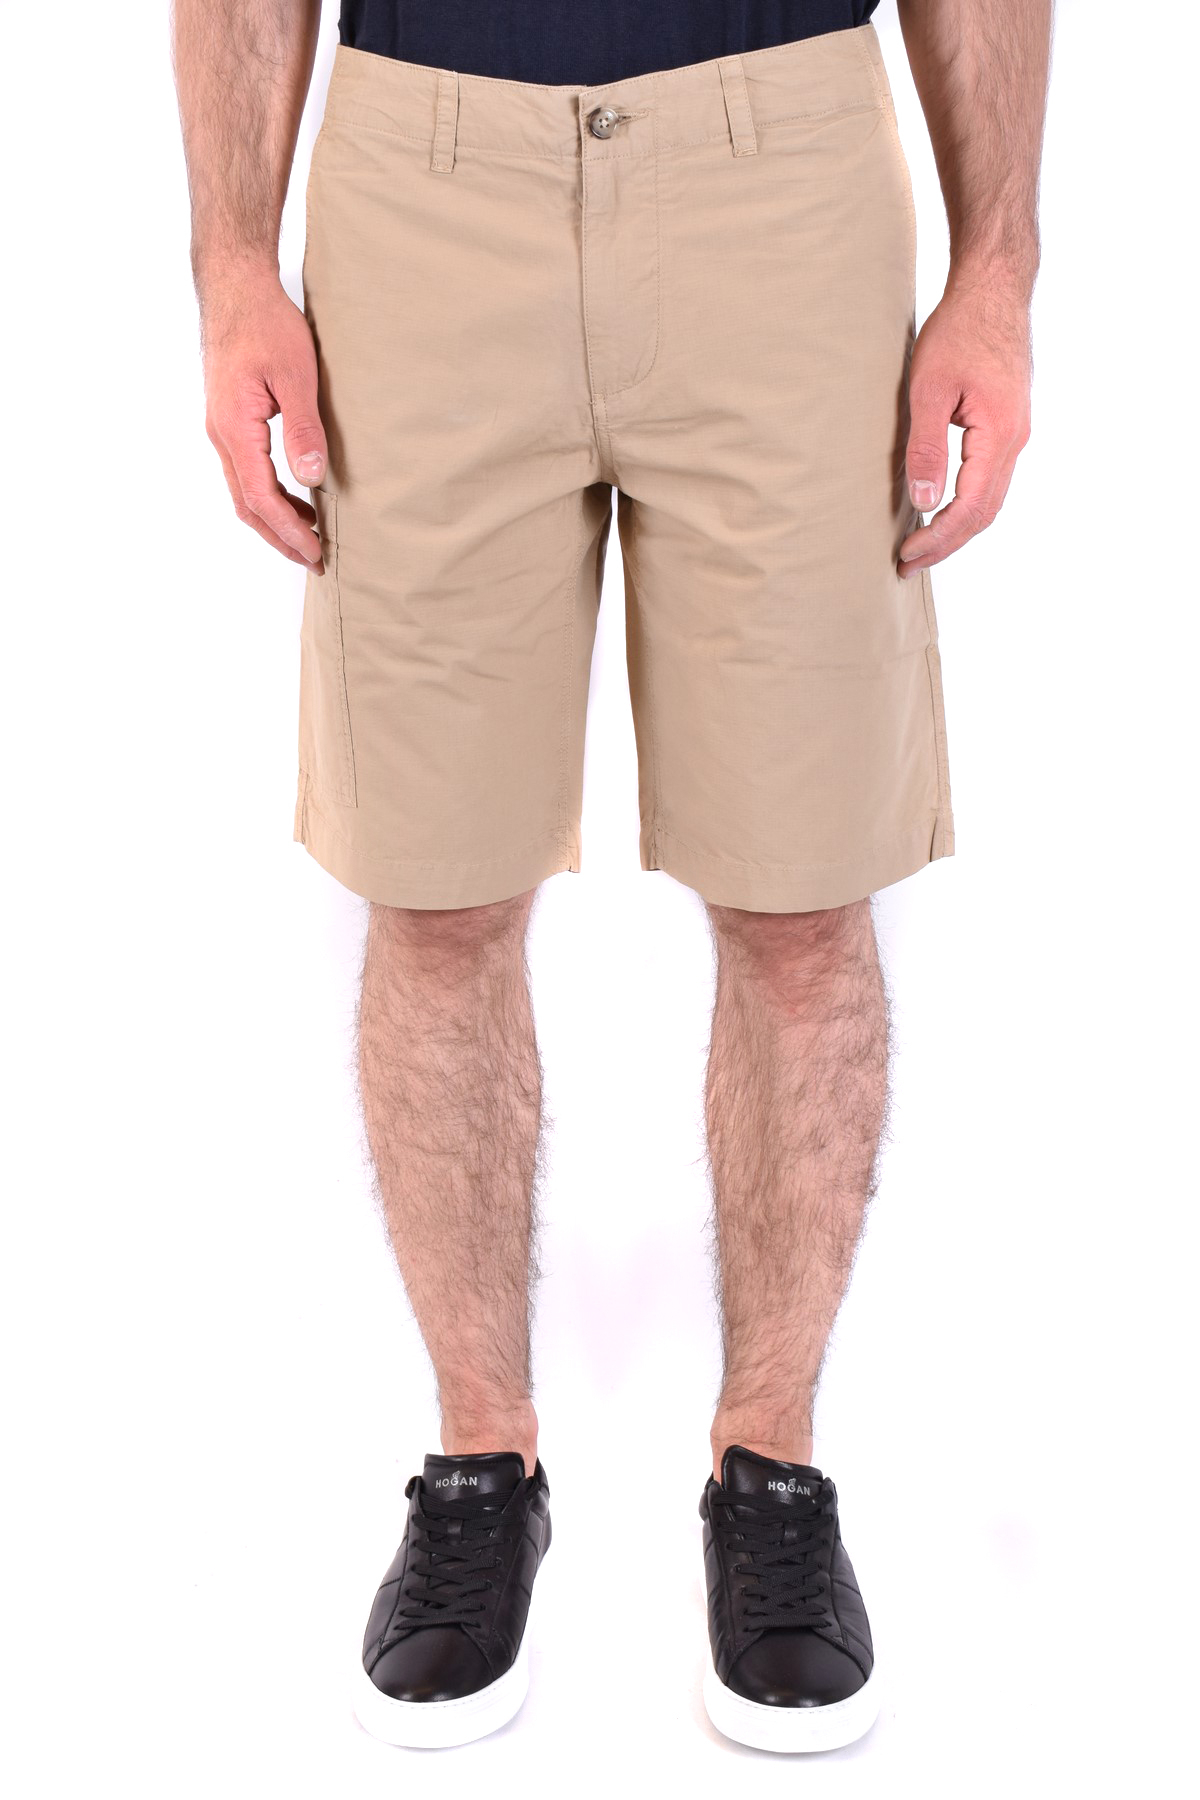 Woolrich Shorts | eBay